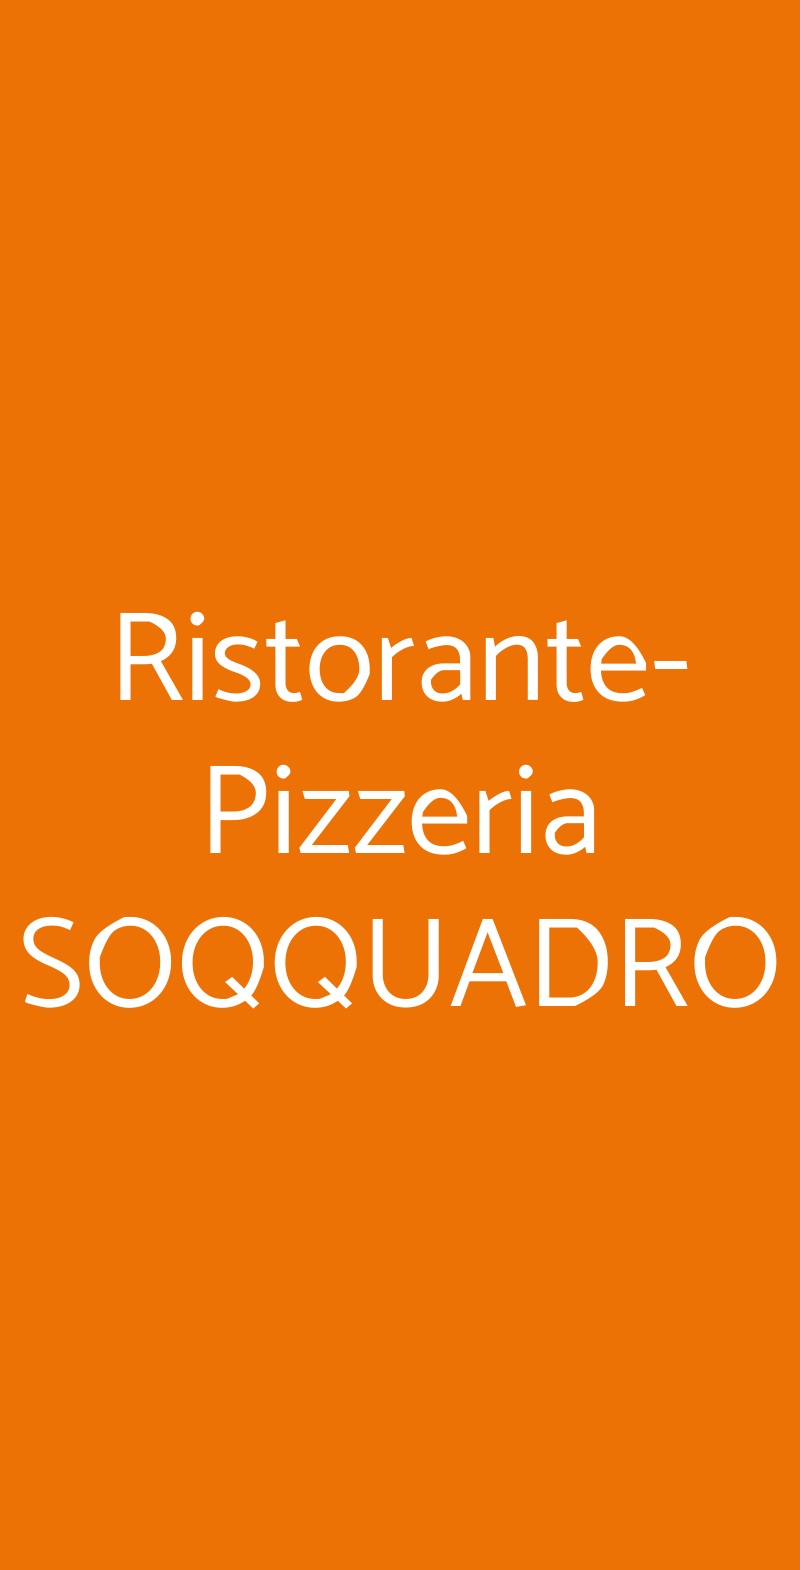 Ristorante-Pizzeria SOQQUADRO Venetico menù 1 pagina